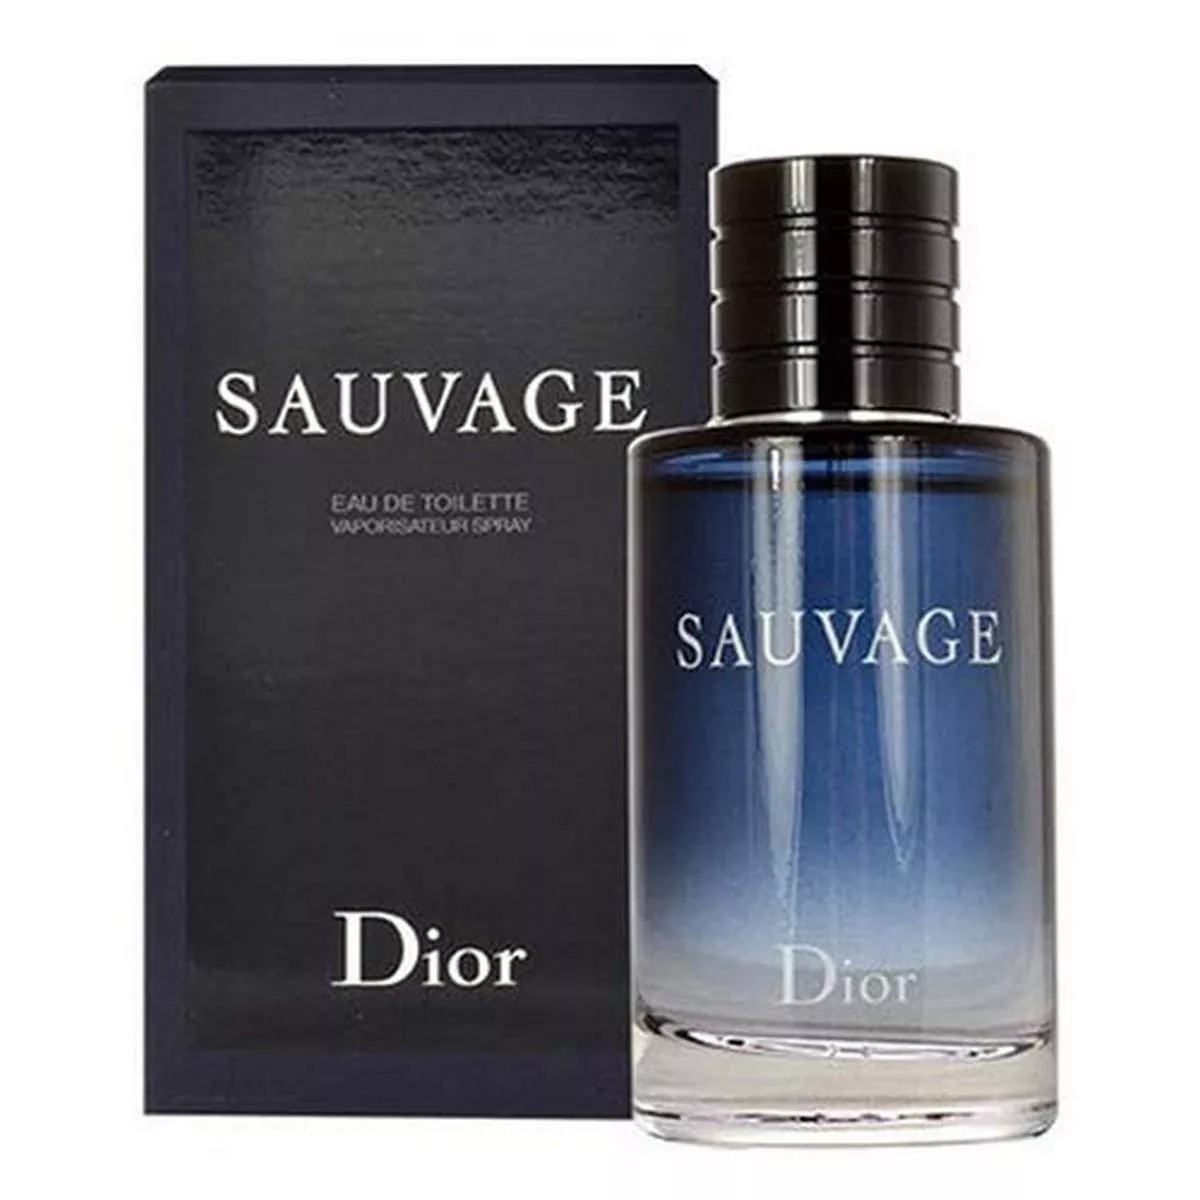 Nước hoa Dior Sauvage Parfum chính hãng  Apa Nicihe